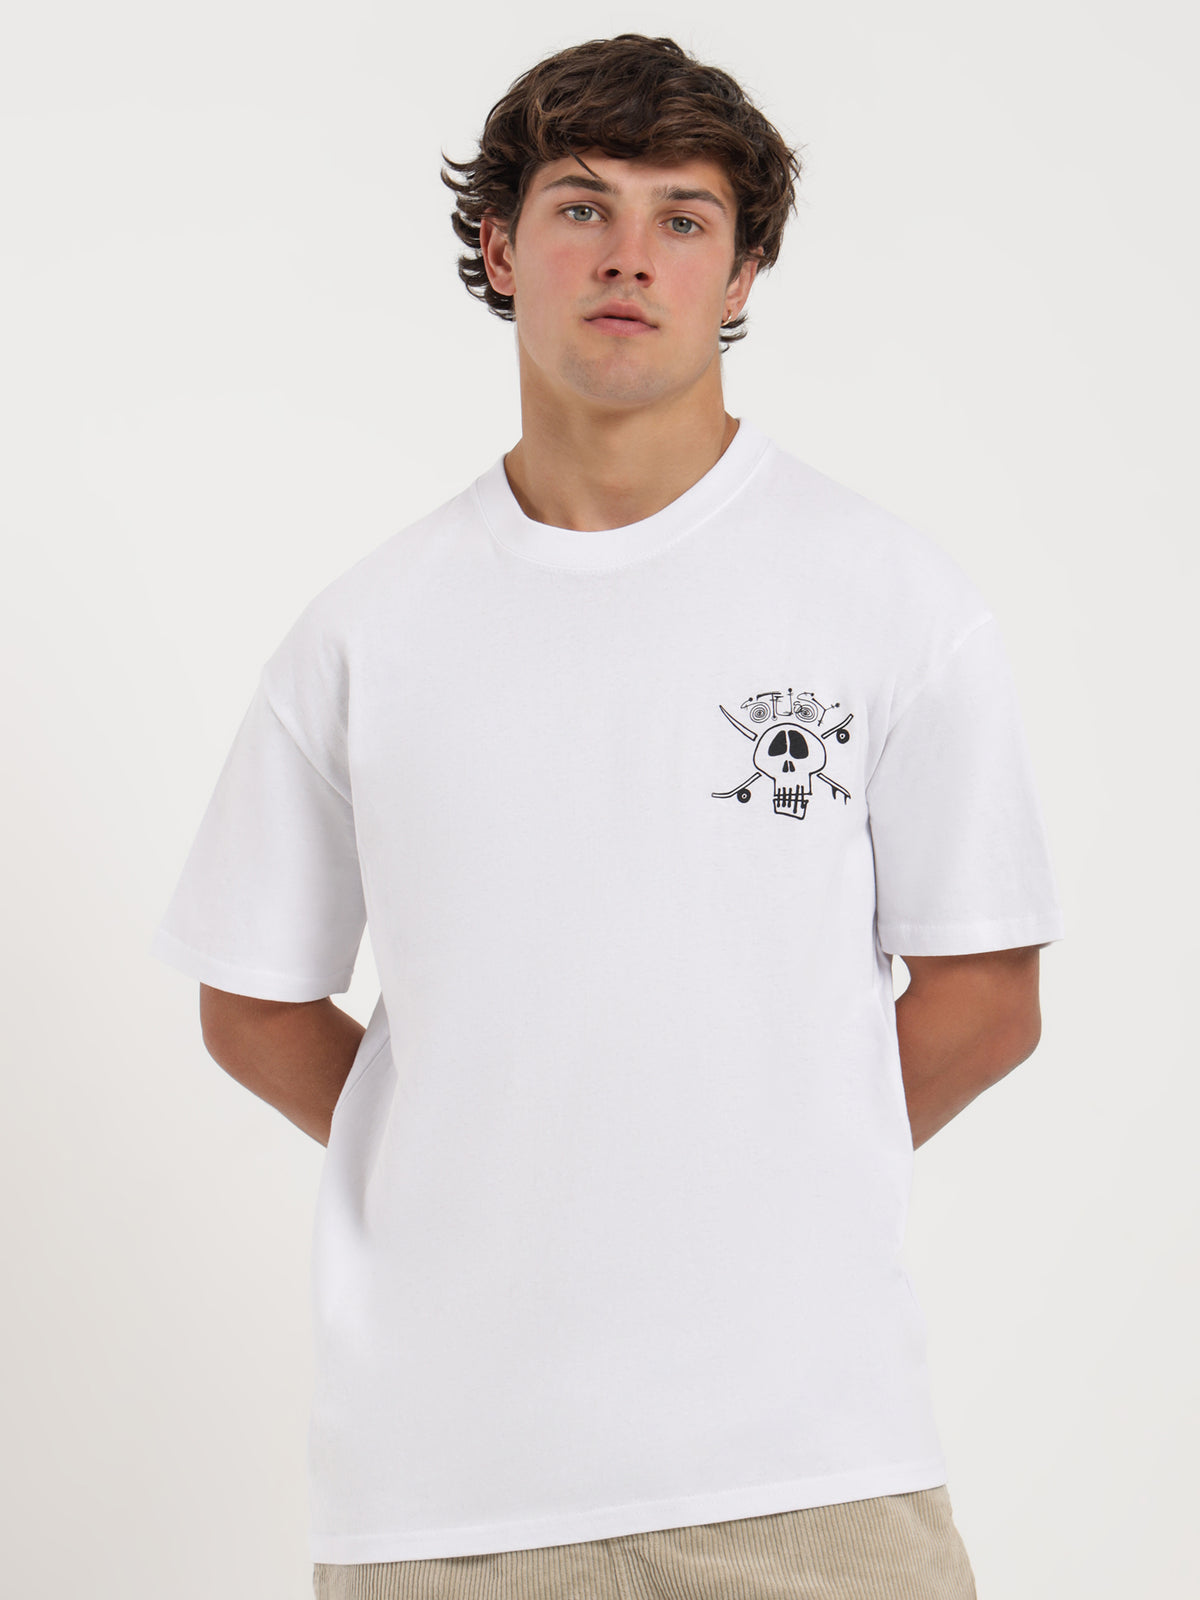 Surf Skate Skull 50/50 T-Shirt in White